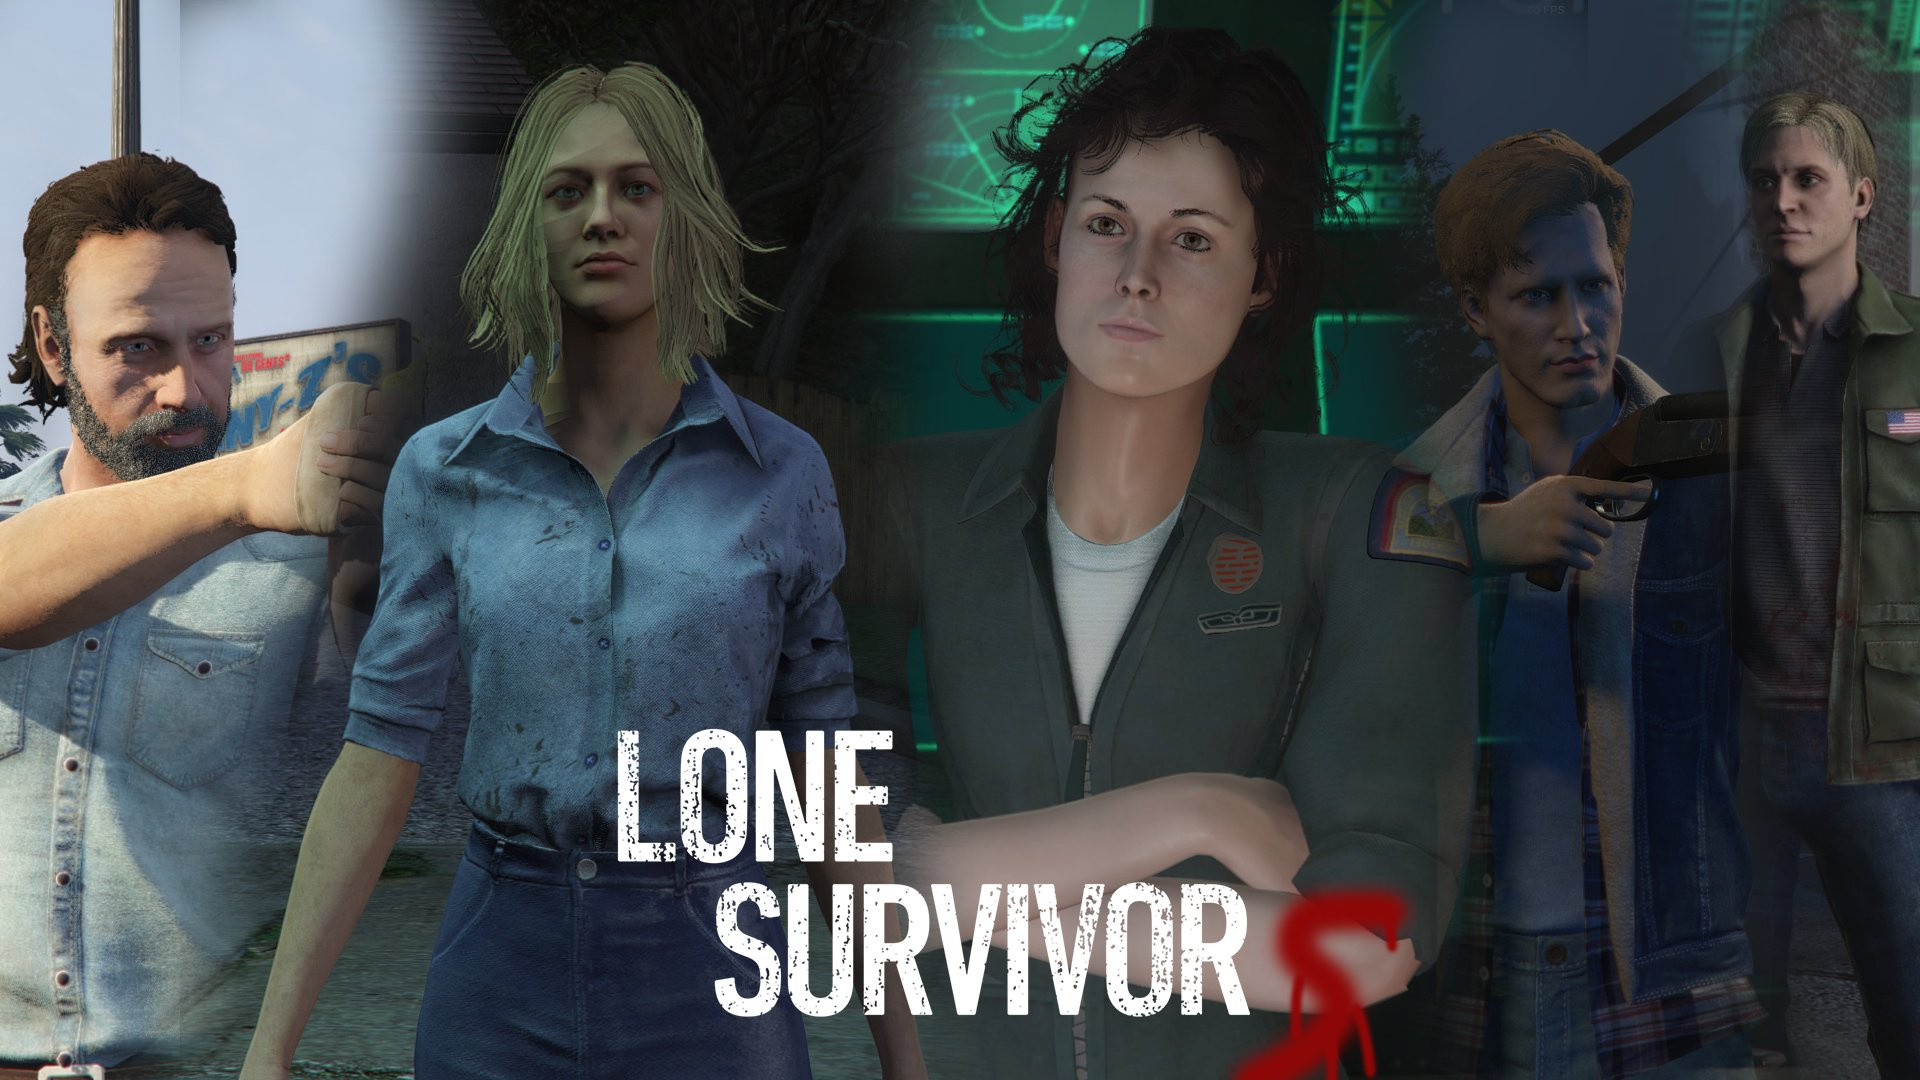 Lone survivor script